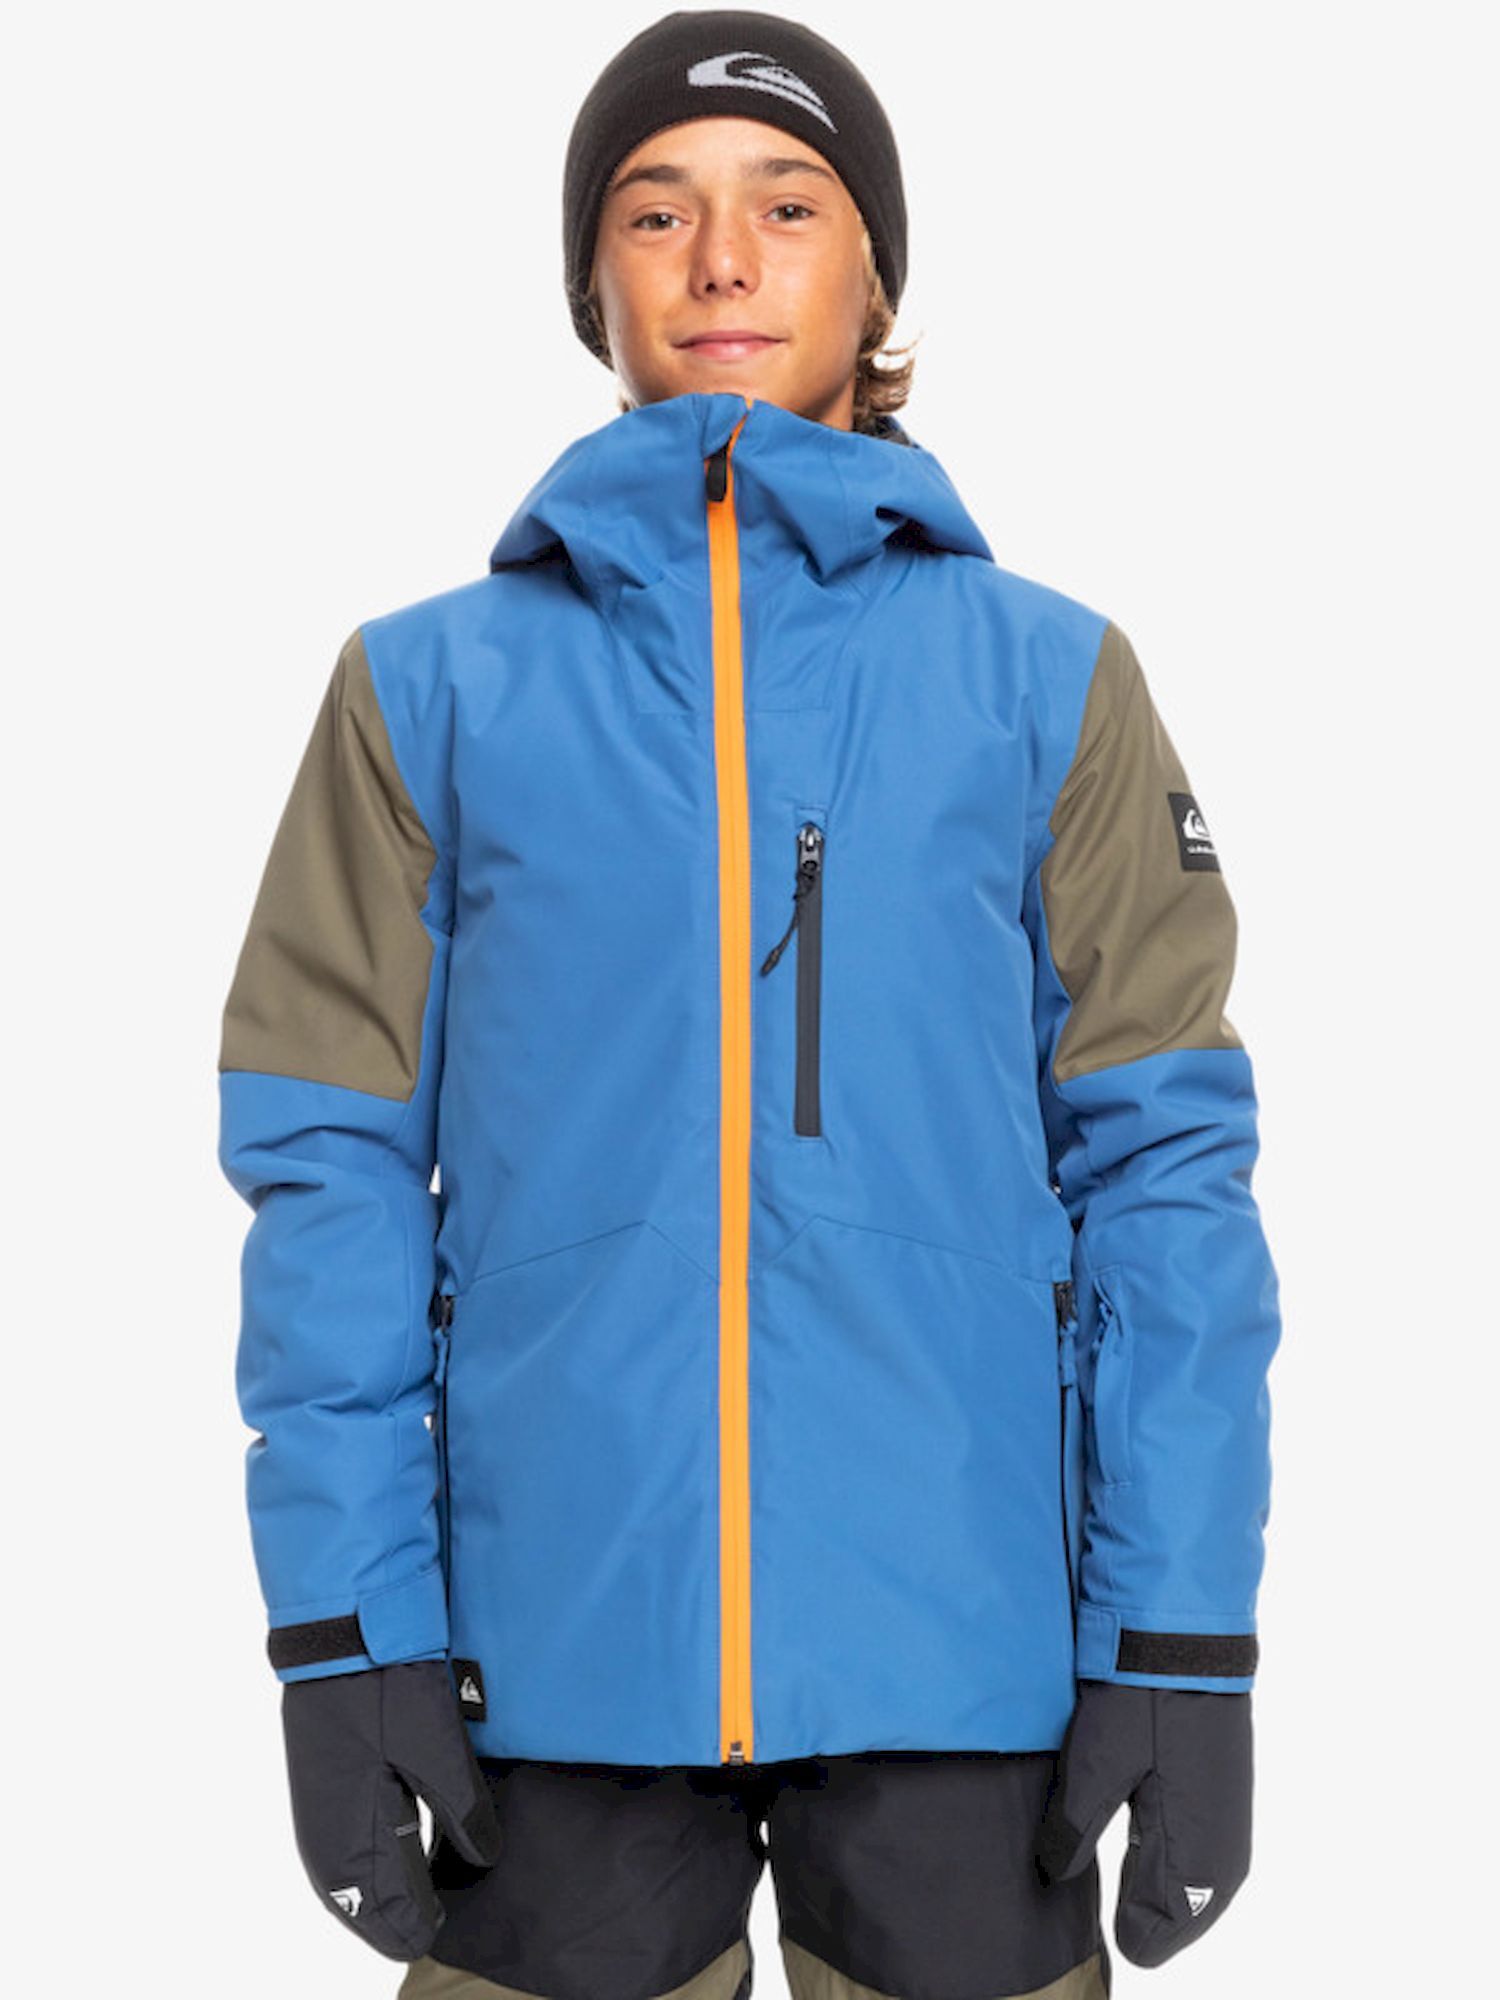 Quiksilver Travis Rice Youth Jacket - Chaqueta de esquí - Niños